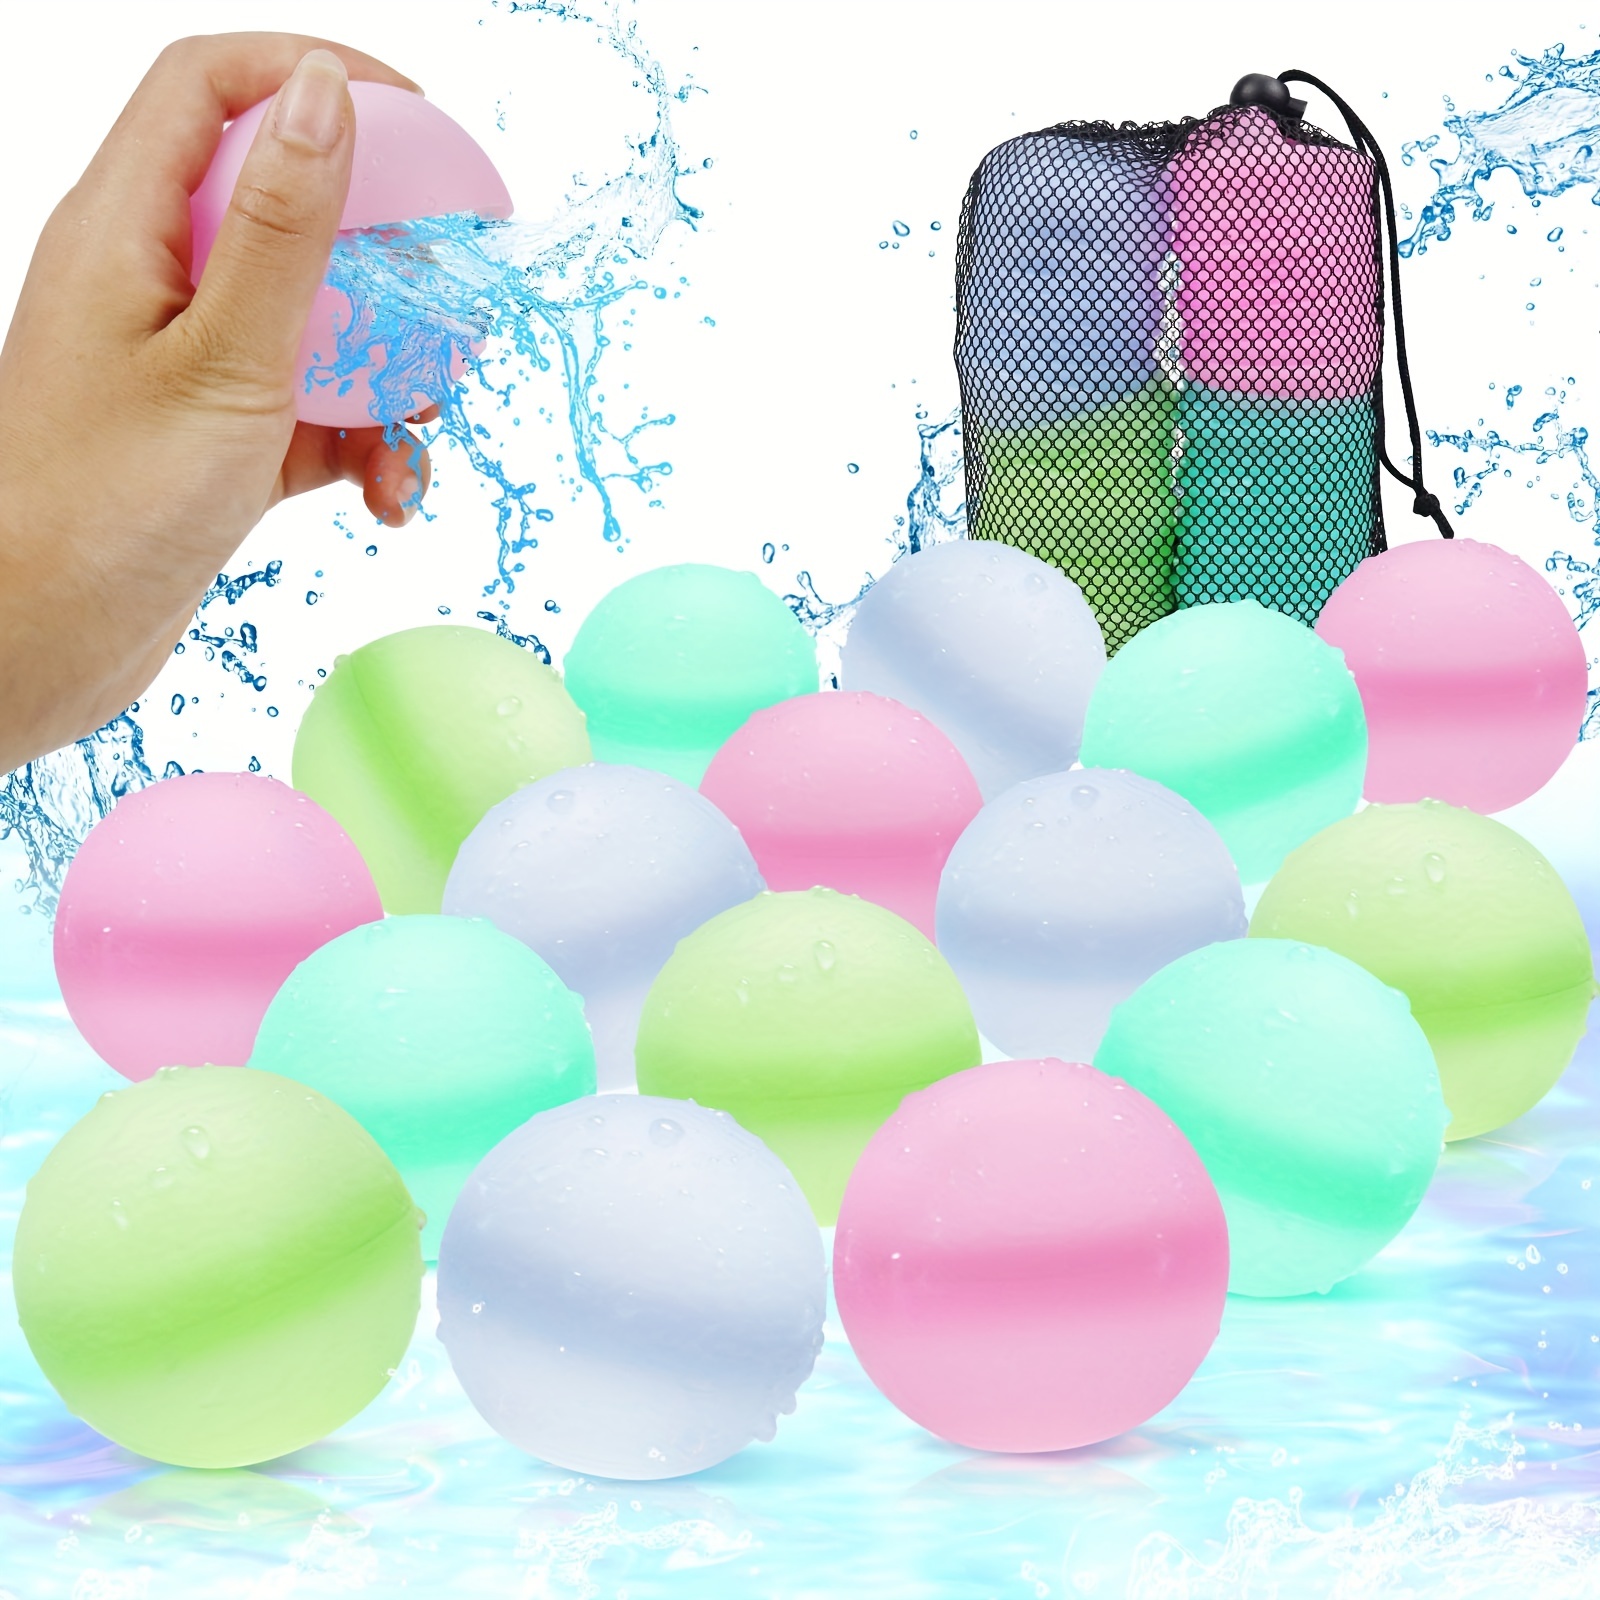 Super Taille Bubble Ball Toy pour adultes Enfants, ballon gonflable géant  Boule de jardin de plage Balle en caoutchouc souple pour la piscine de  jardin de fête en plein air Qxuan